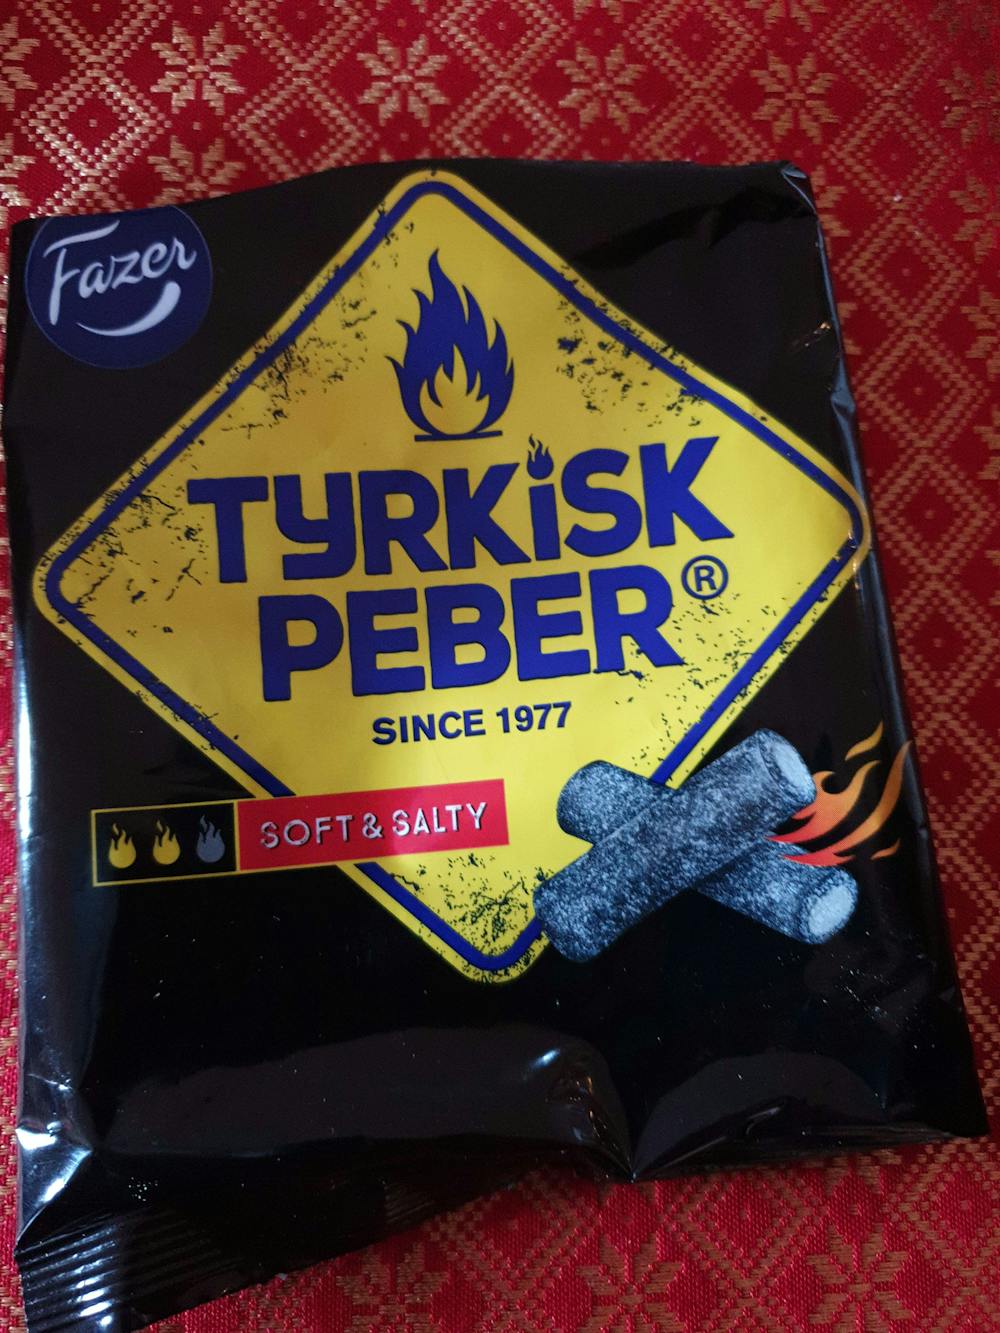 Tyrkisk peber, Fazer